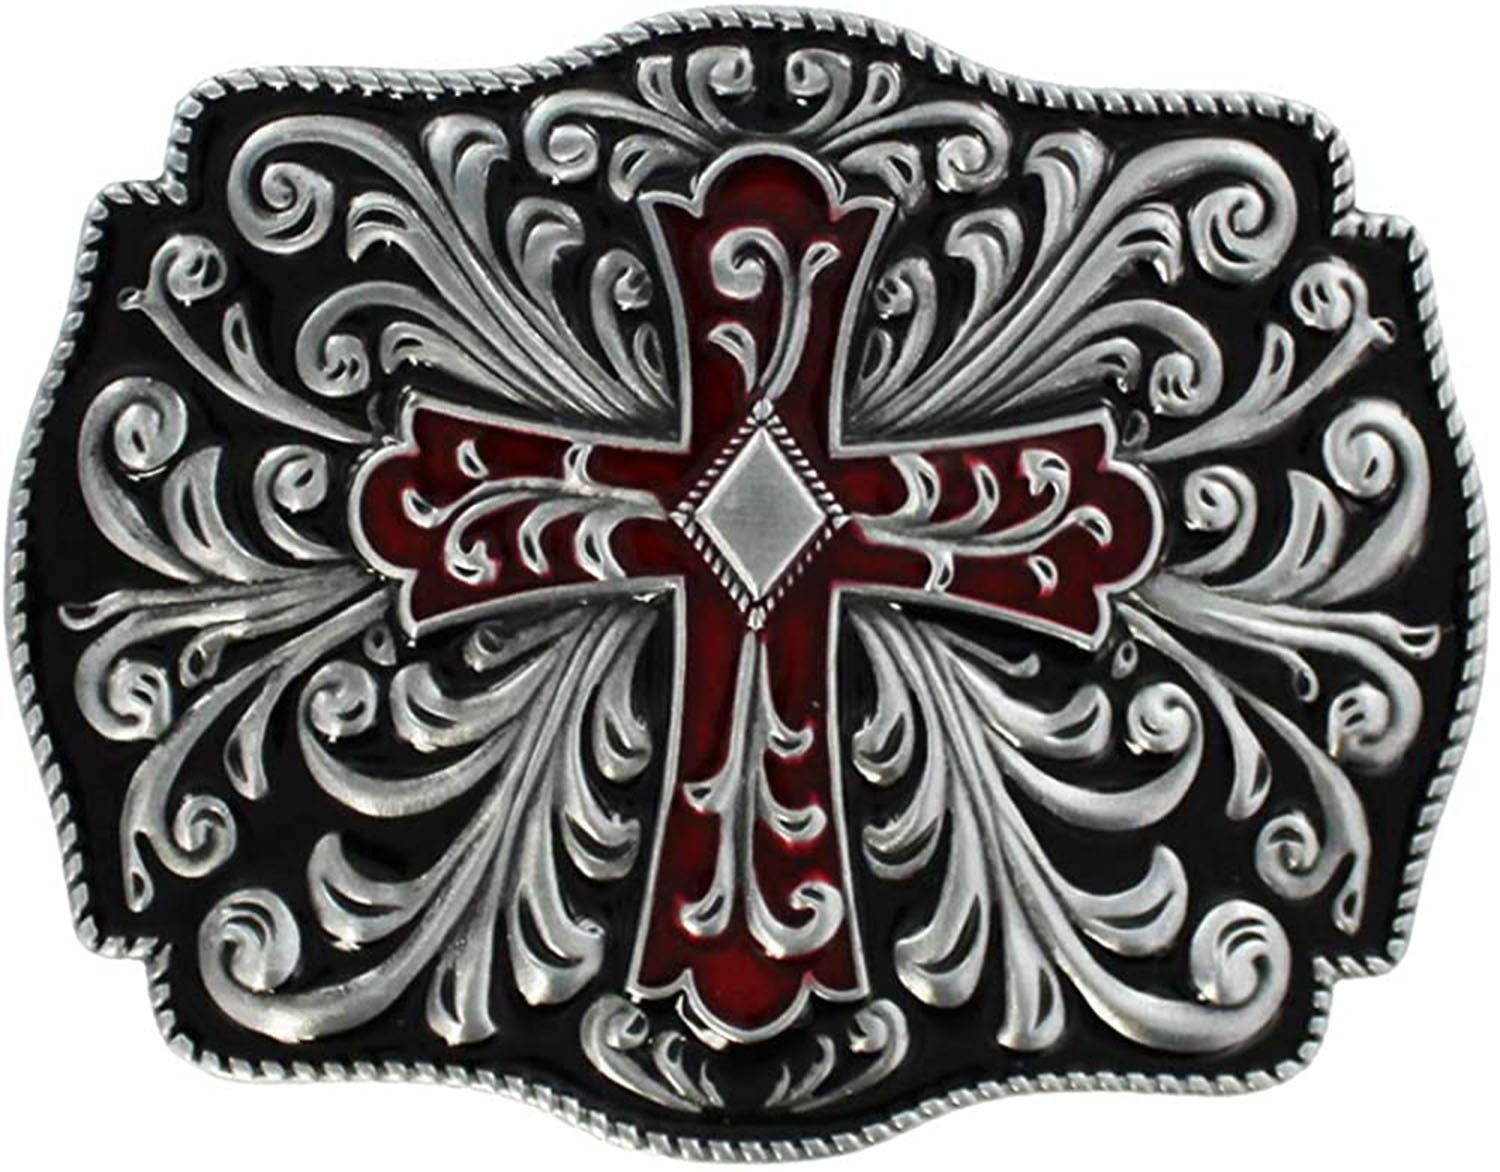 Herren Gürtelschnallen Housruse Gürtelschnalle Buckle - Antique cross red/black decorated Denim-Gürtelschnalle für Herren